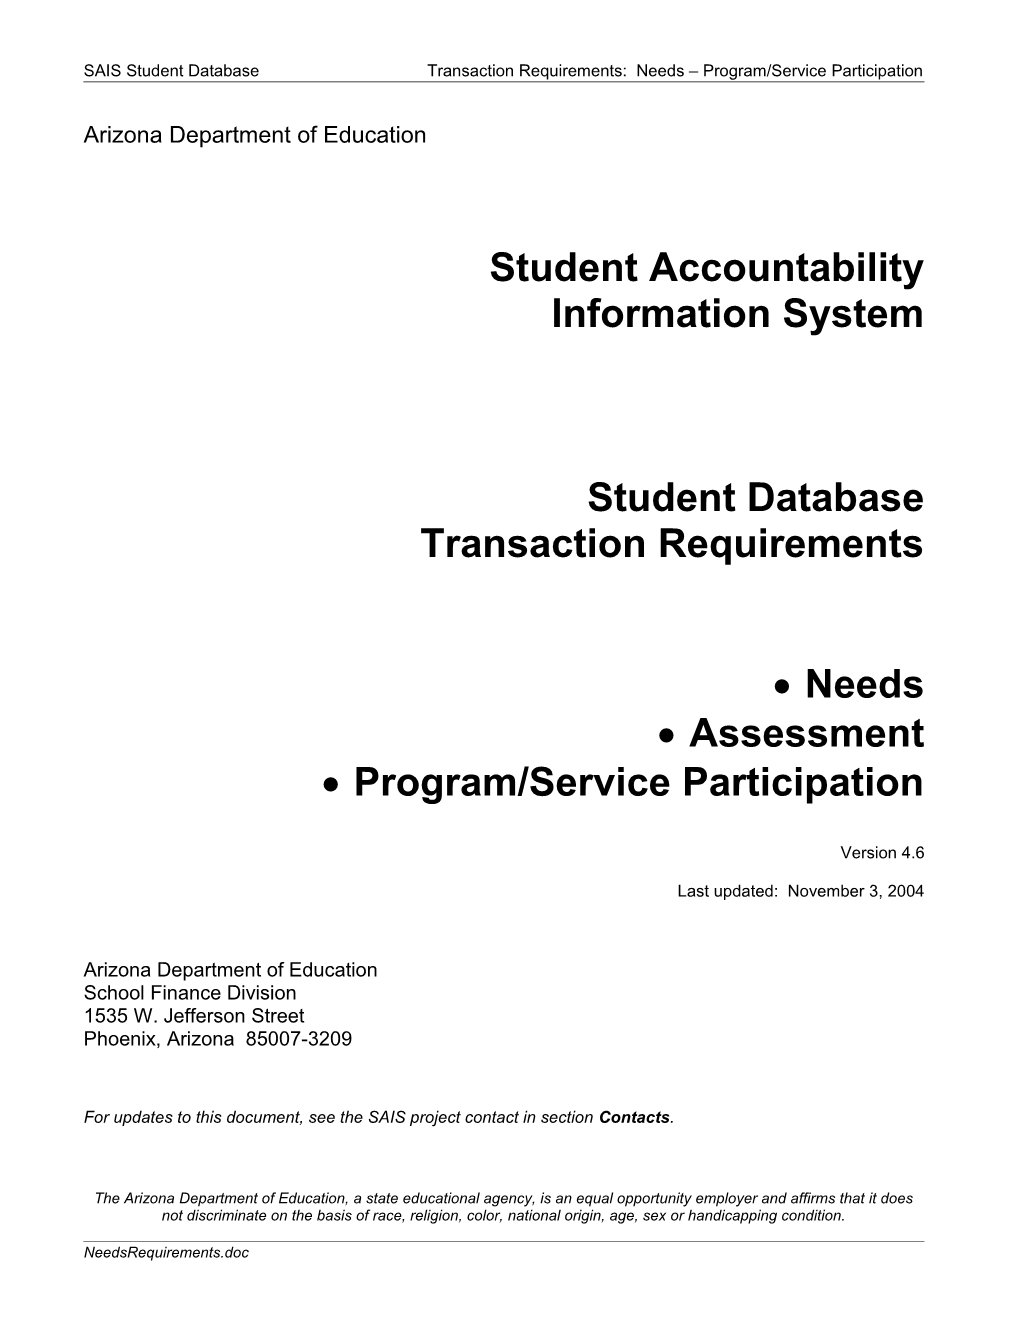 SAIS Student Database Transaction Requirements: Needs Program/Service Participation